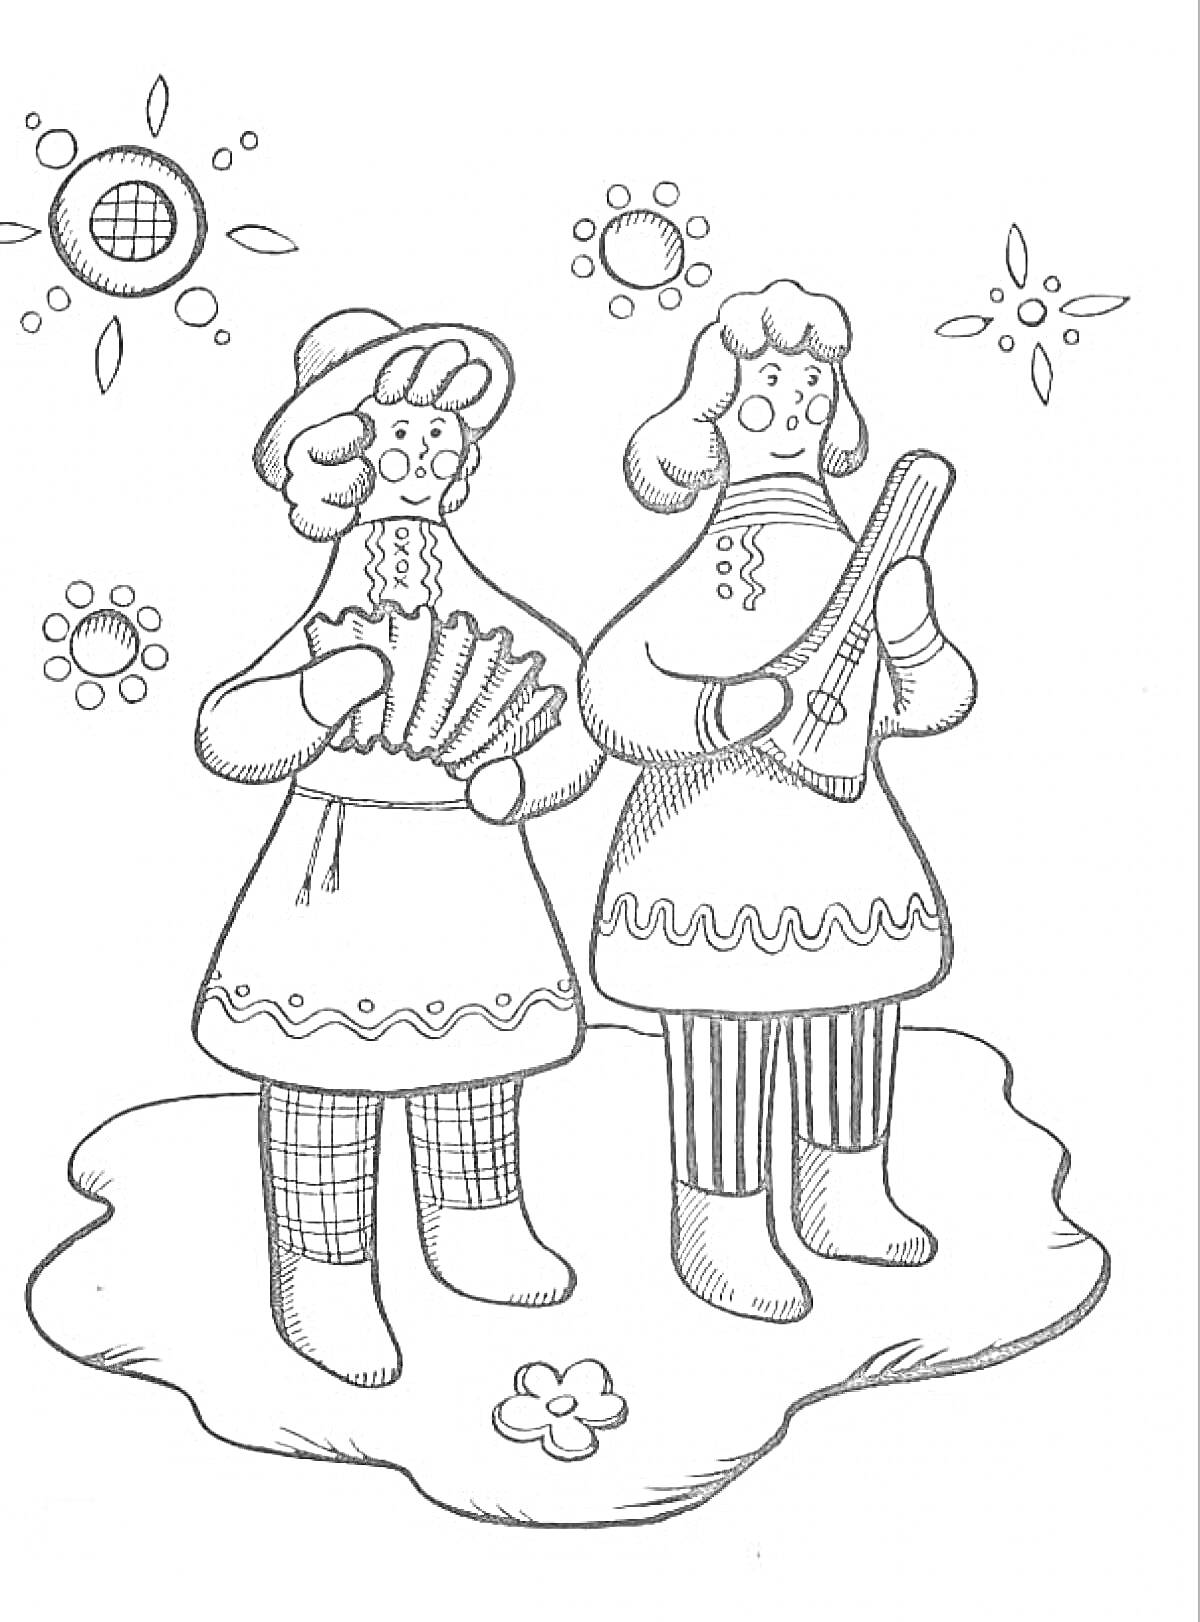 Раскраска Дымковская игрушка с двумя женщинами в традиционной одежде, держащими музыкальные инструменты на фоне цветков и солнца